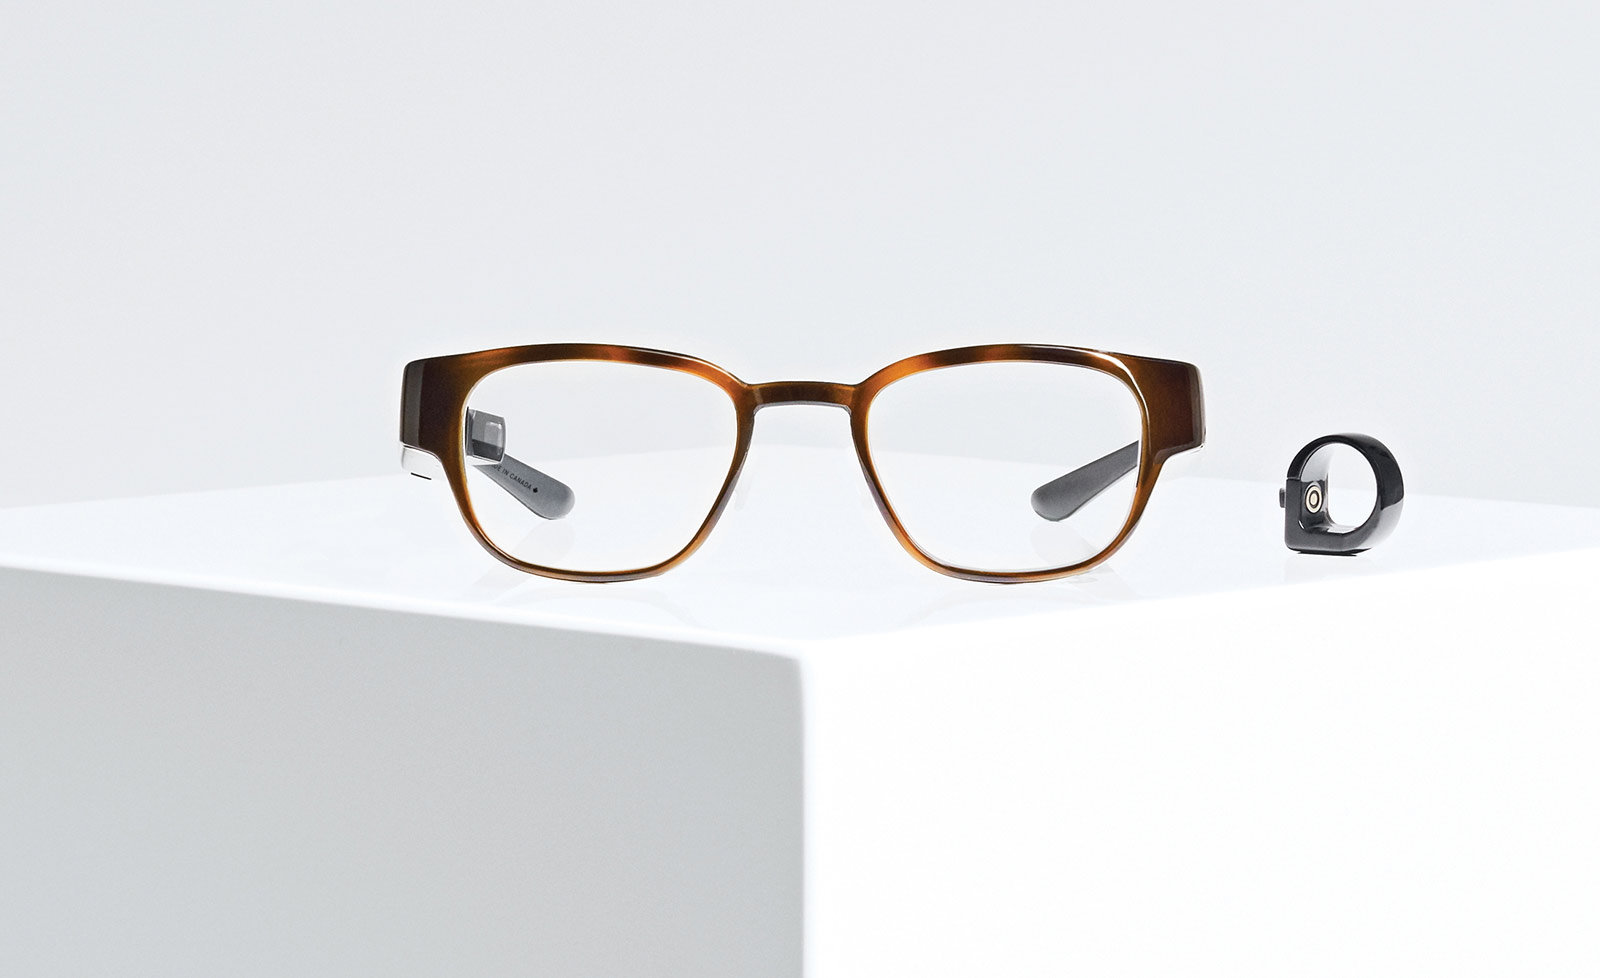 Alphabet (Google) serait sur le point de racheter une start-up spécialisée dans les lunettes AR grand public